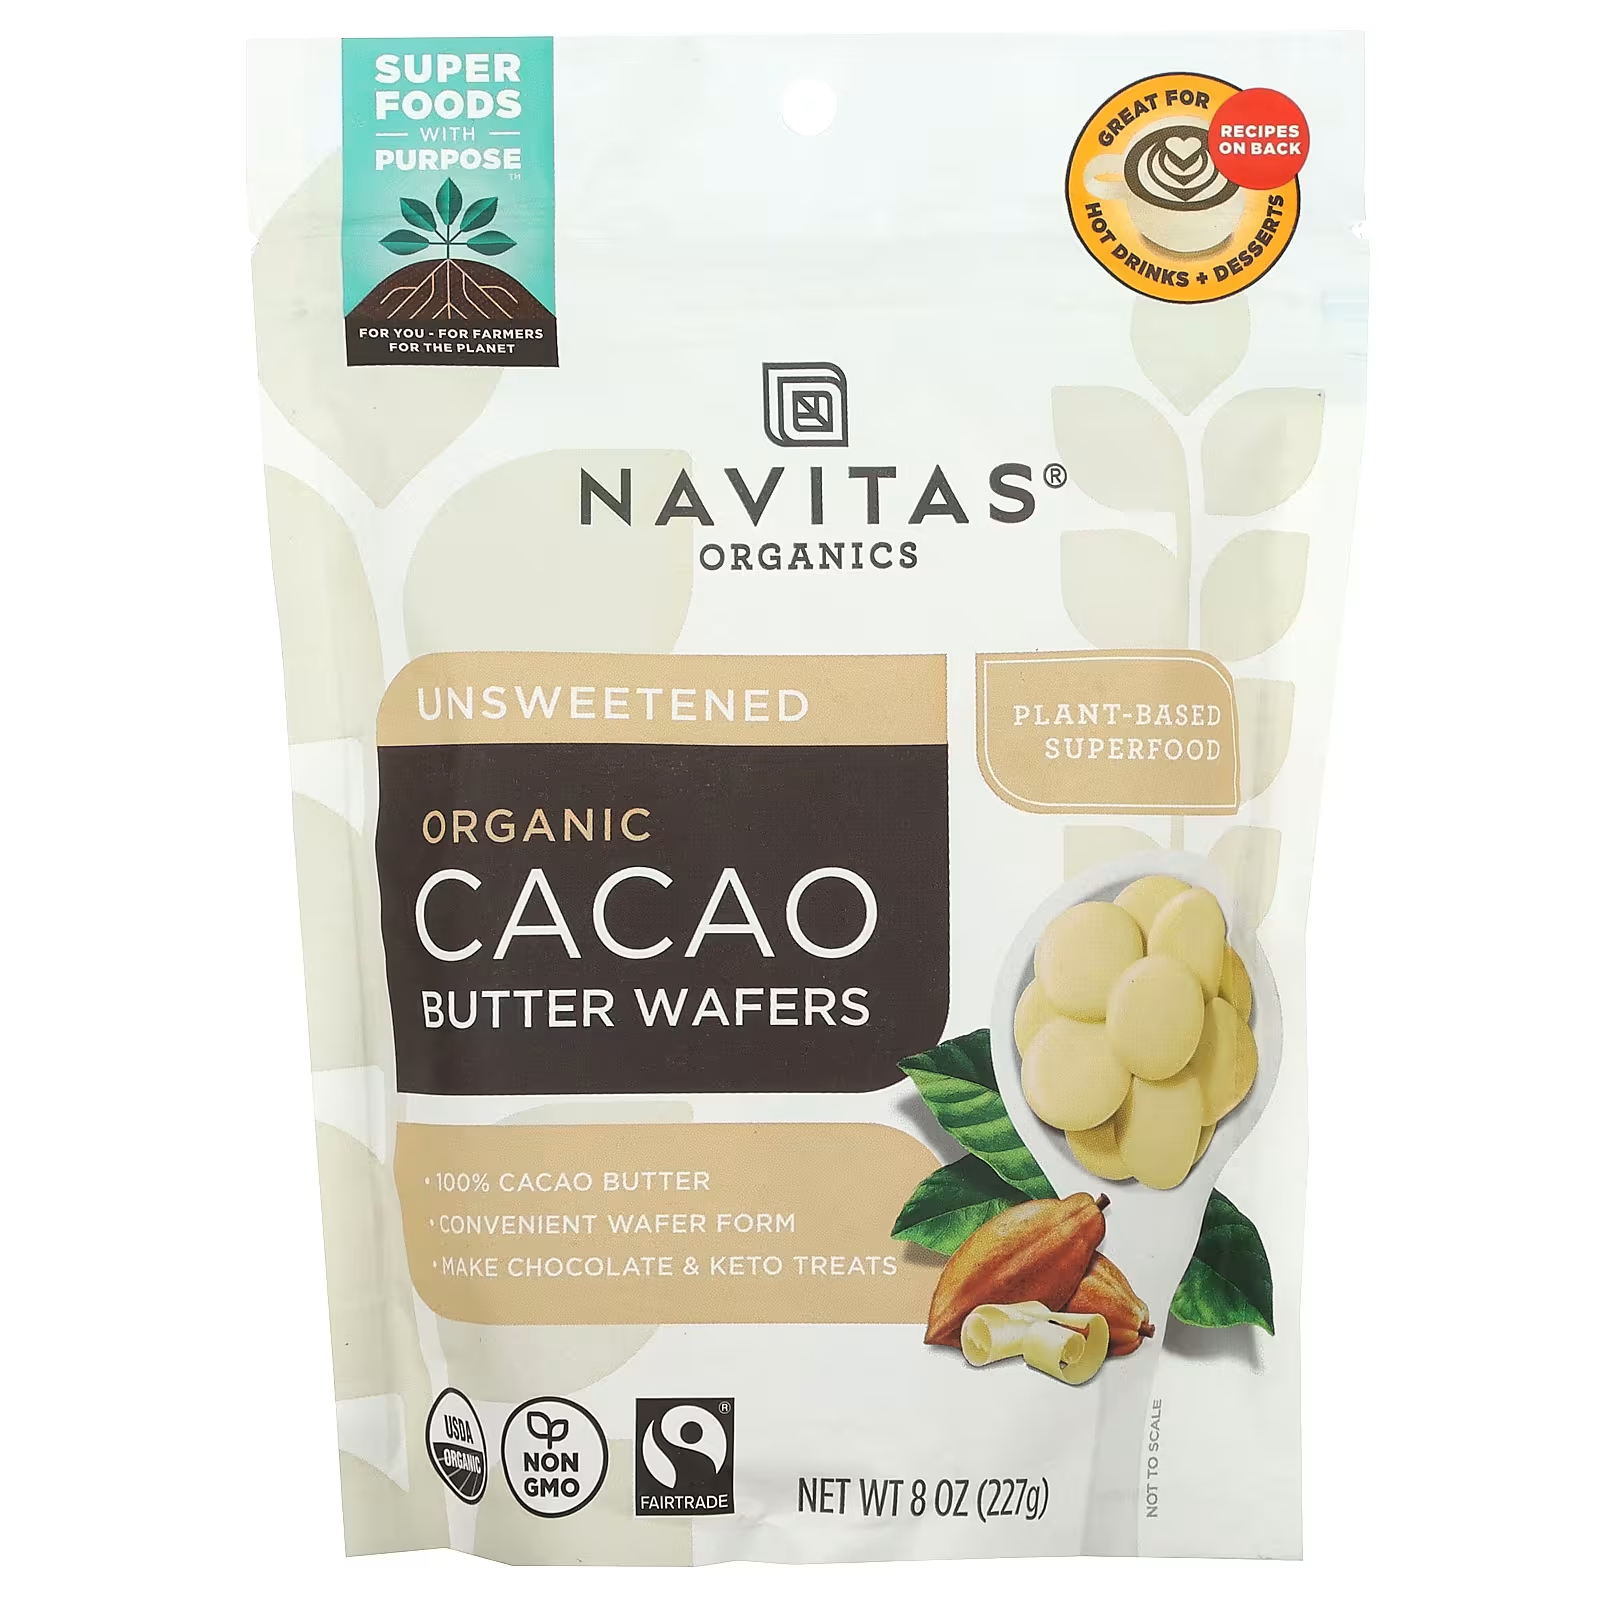 Navitas Organics Органические вафли с маслом какао, несладкие, 8 унций (227 г) navitas organics longevity blend органическое какао рейши 227 г 8 унций